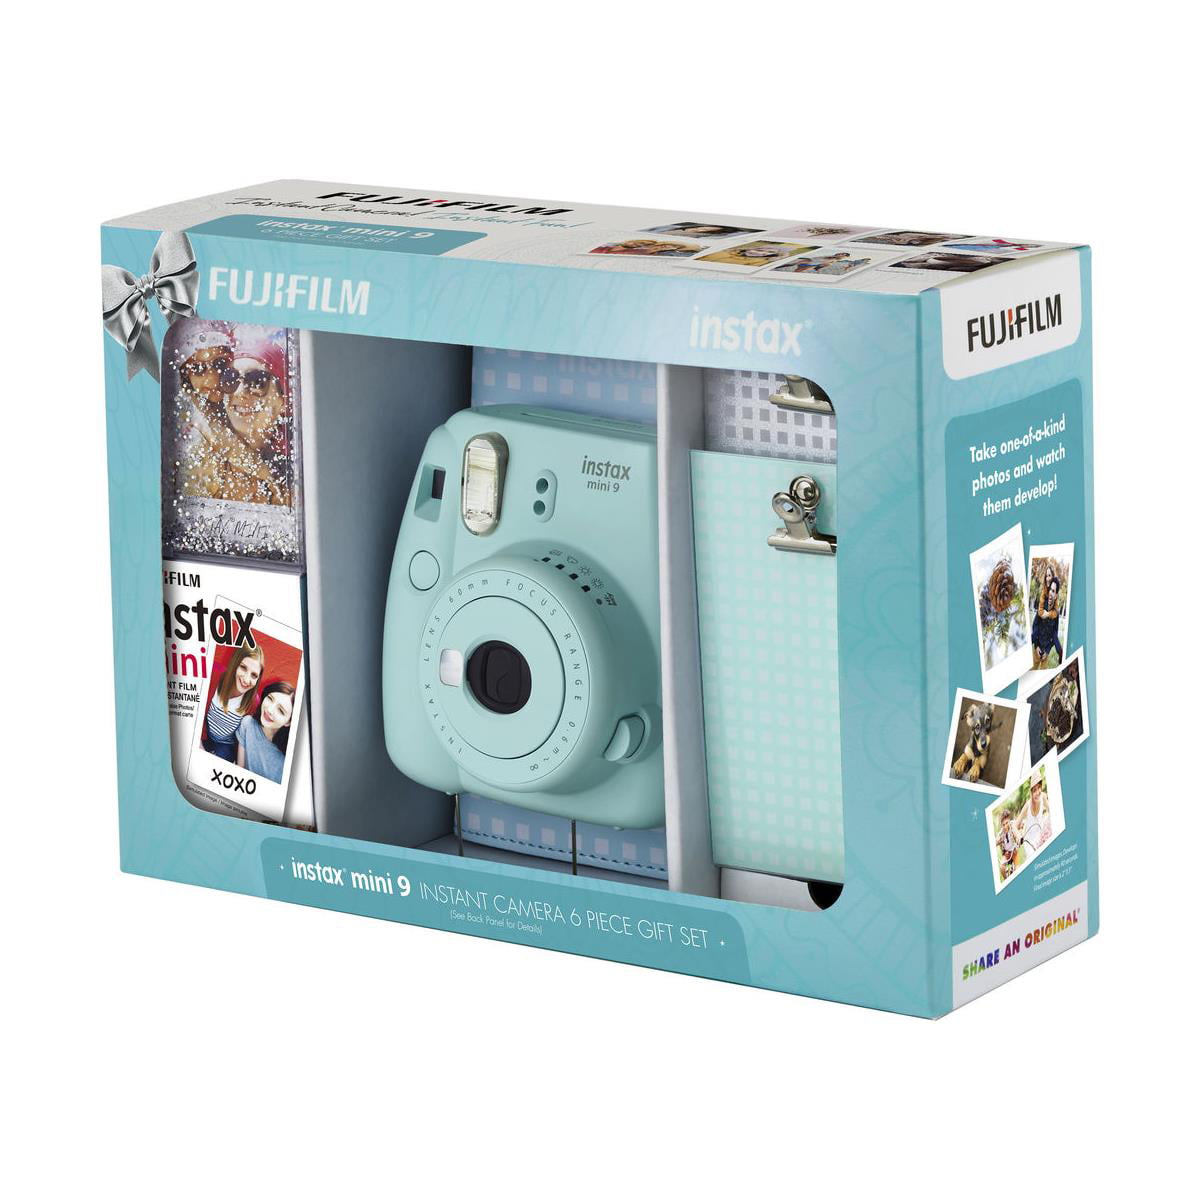 Fujifilm Instax Mini 9 Instant Camera - Ice Blue, 2.7x4.7x4.6 (Instax Mini  9 - Ice Blue)